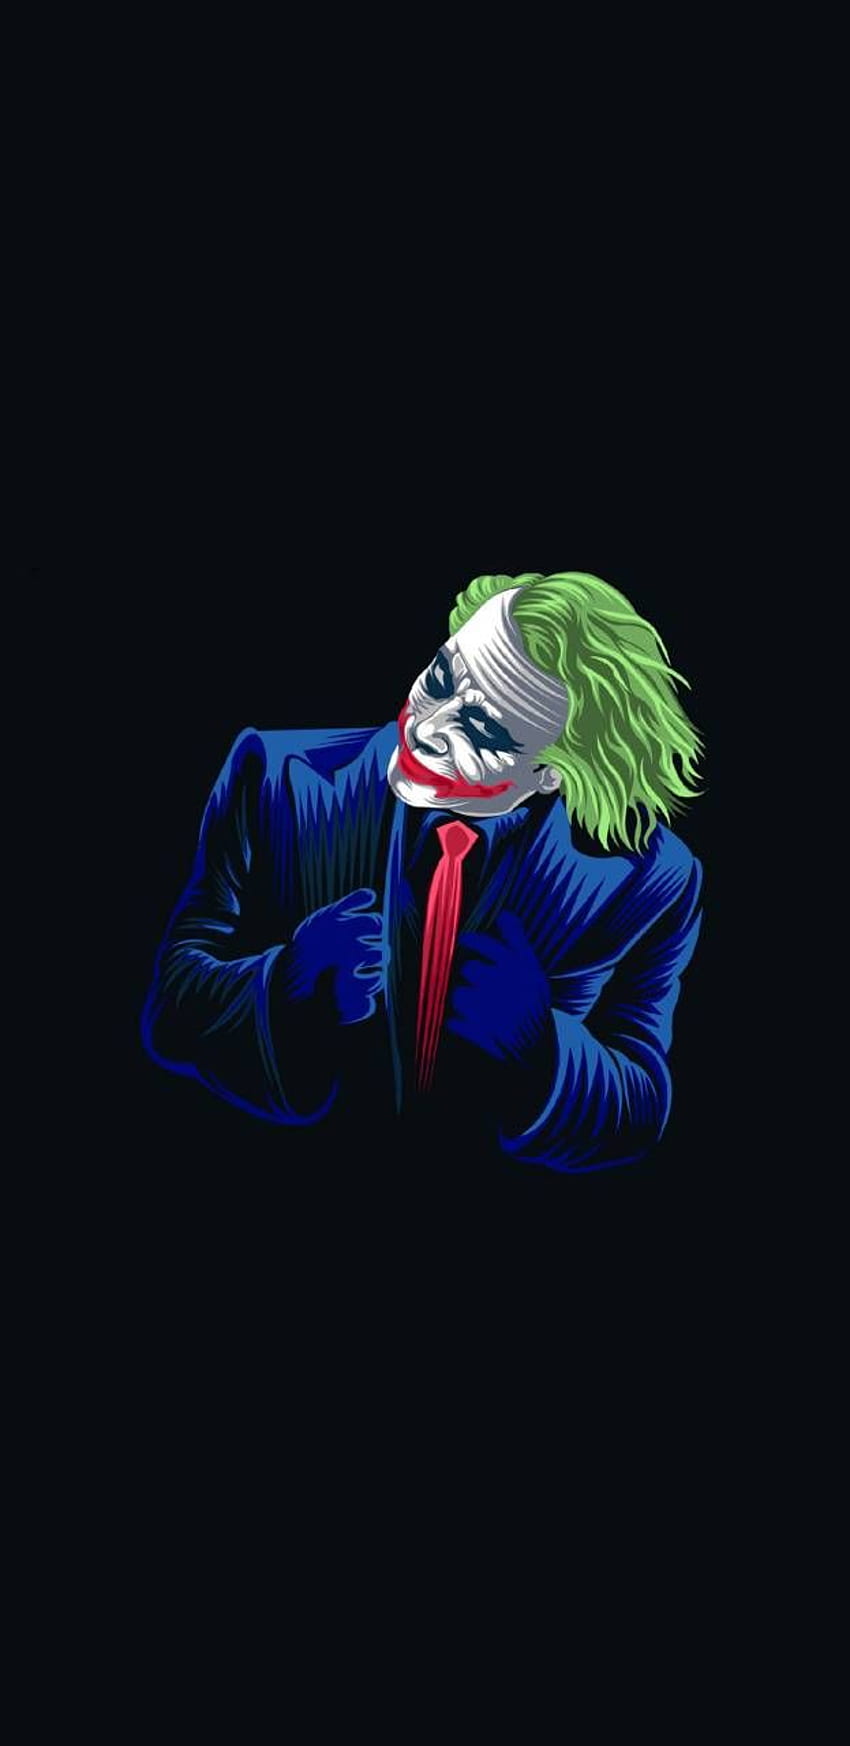 Joker Minimalistic by HD phone wallpaper | Pxfuel